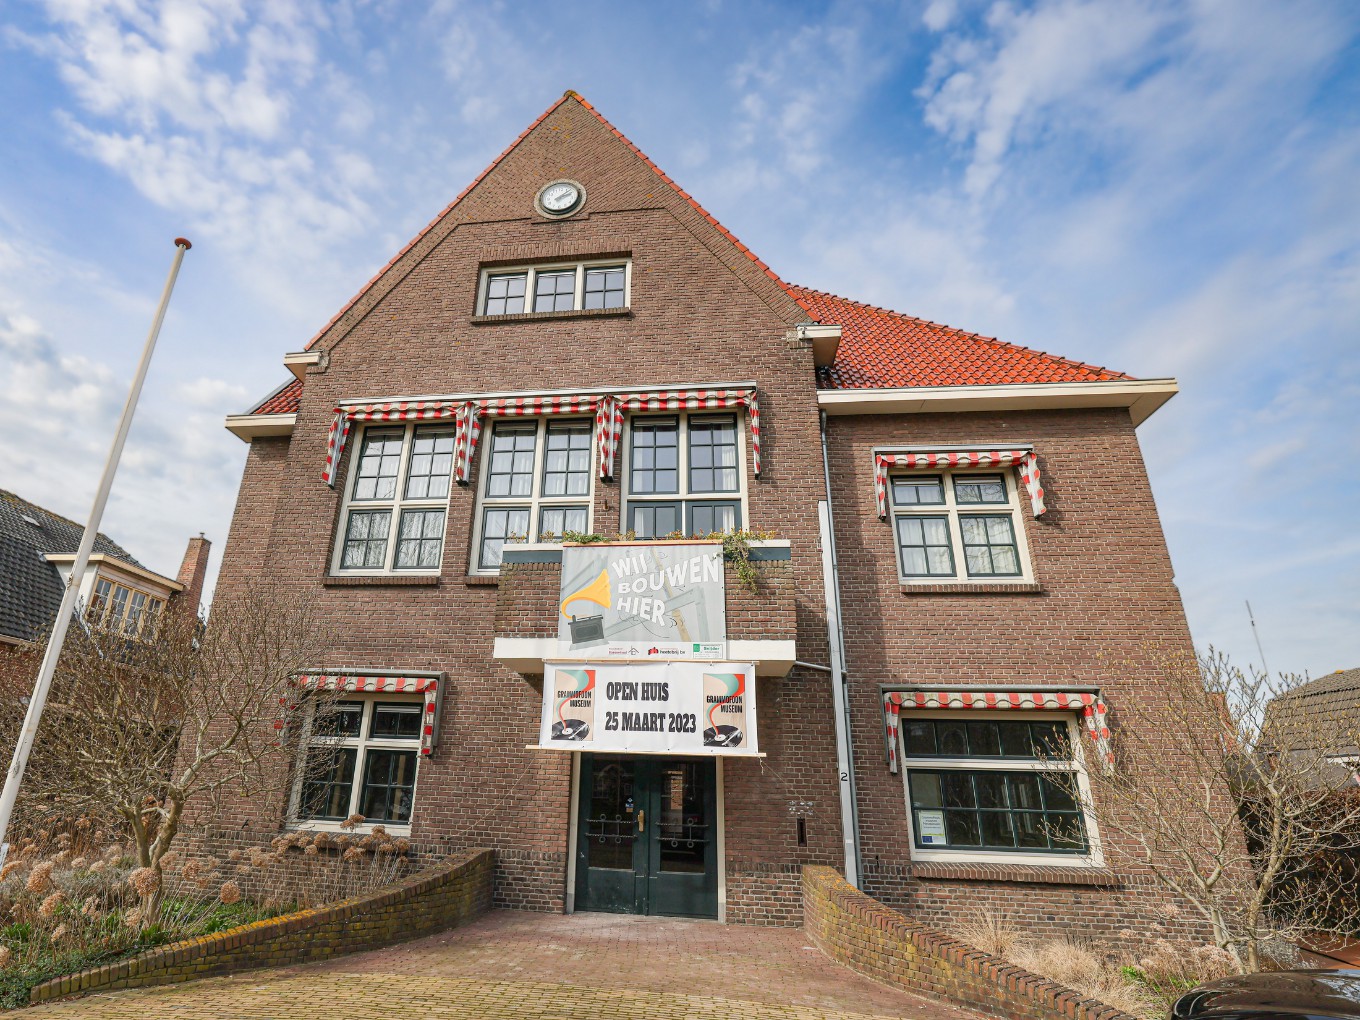 Grammofoonmuseum houdt op zaterdag 25 maart open huis in het Olde Gemientehuus